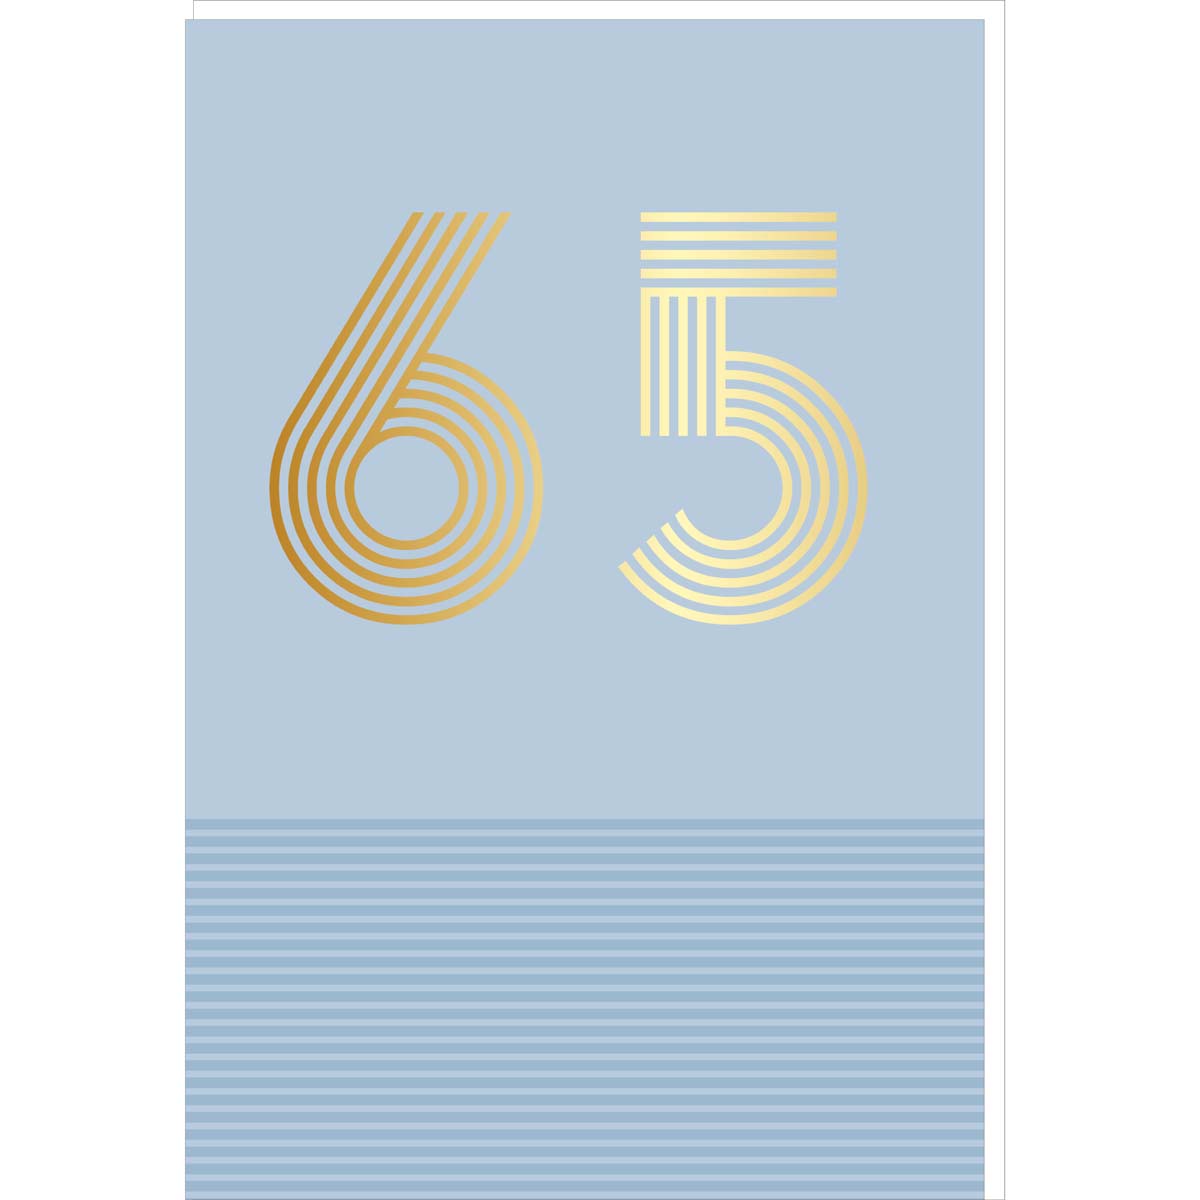 Carte d'anniversaire 65 ans en Or - Bleu clair - A message - Pour Homme et Femme - 11,5 x 17 cm